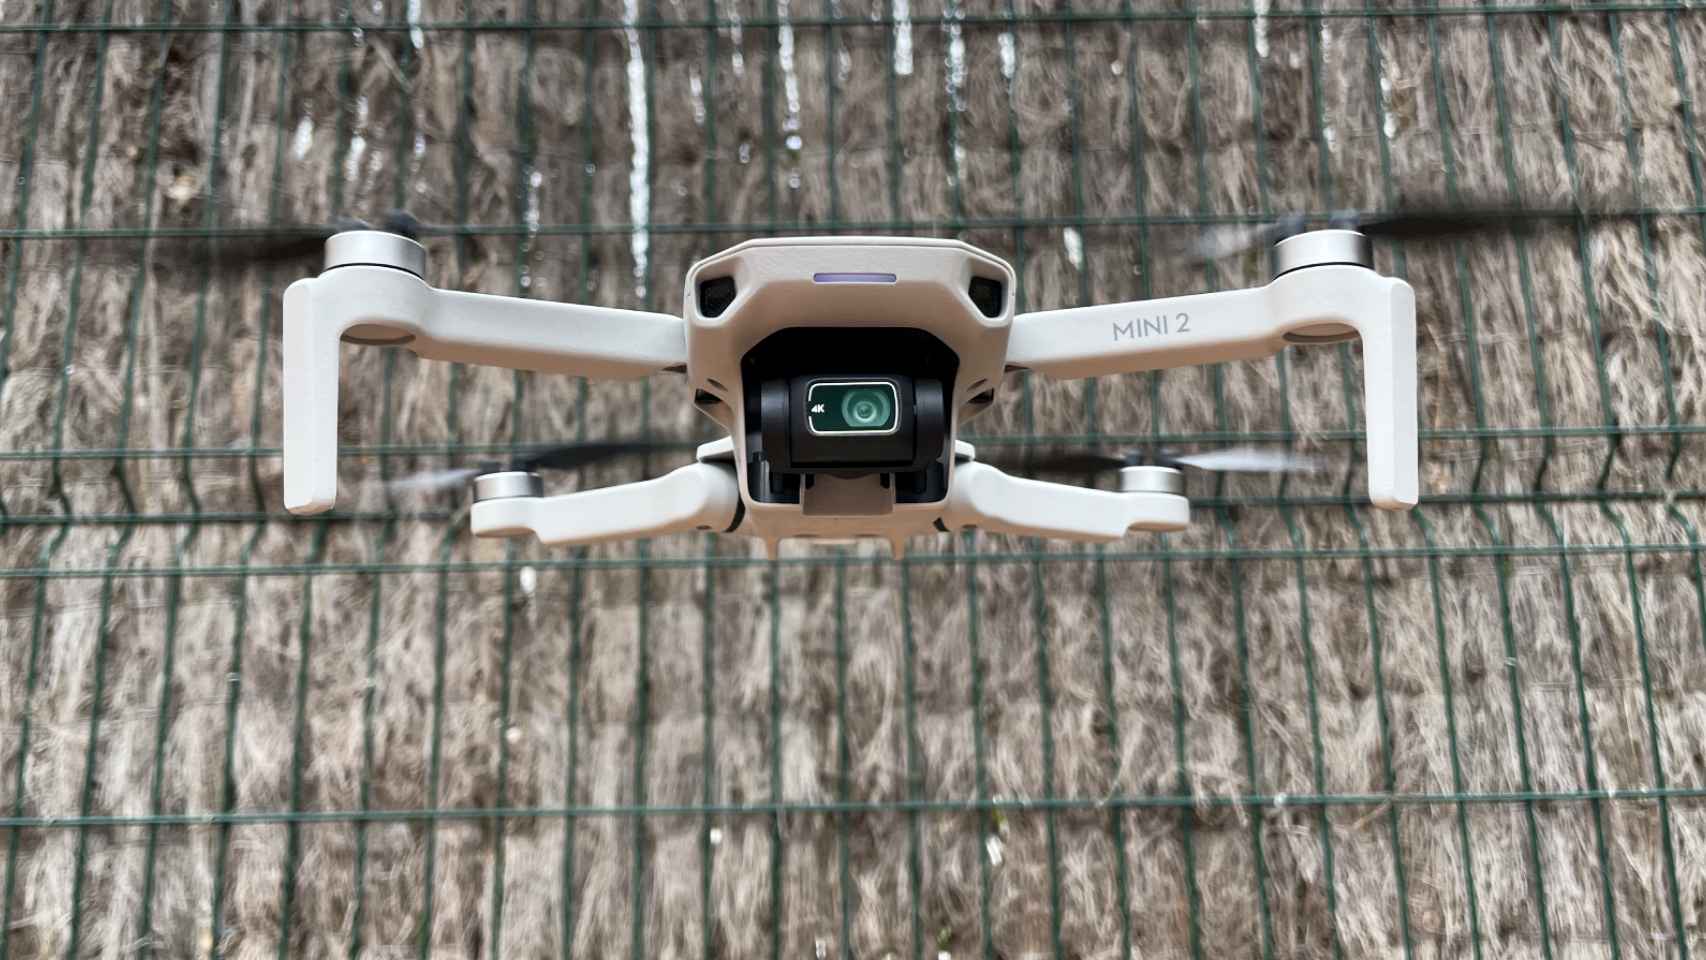 Mavic Mini: ¿puedo volar este dron dónde quiera al pesar menos de